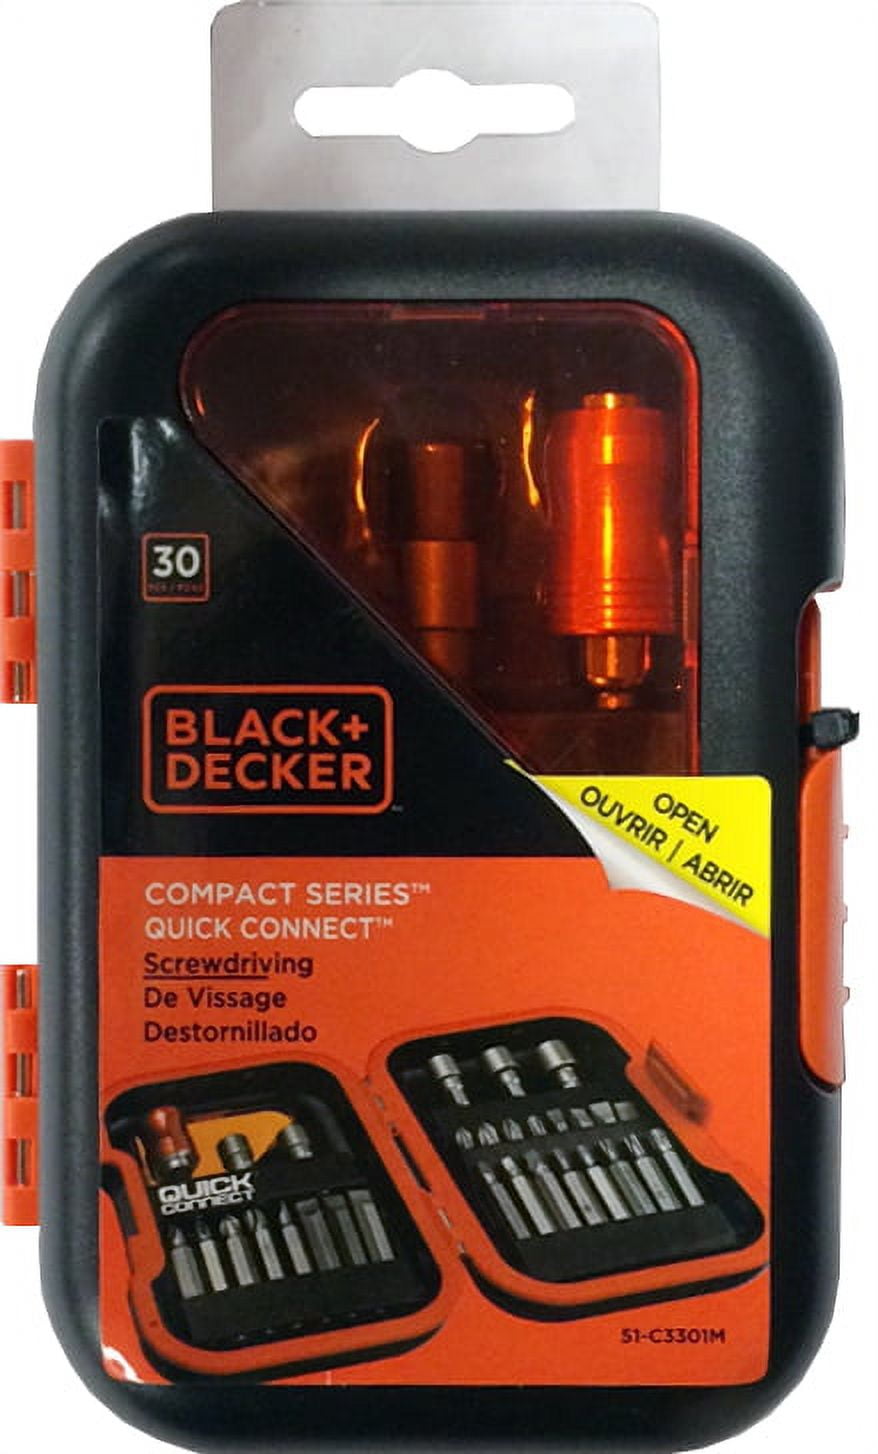 BLACK+DECKER 51-C3301M 30pc Quick Connect Screwdriver Set